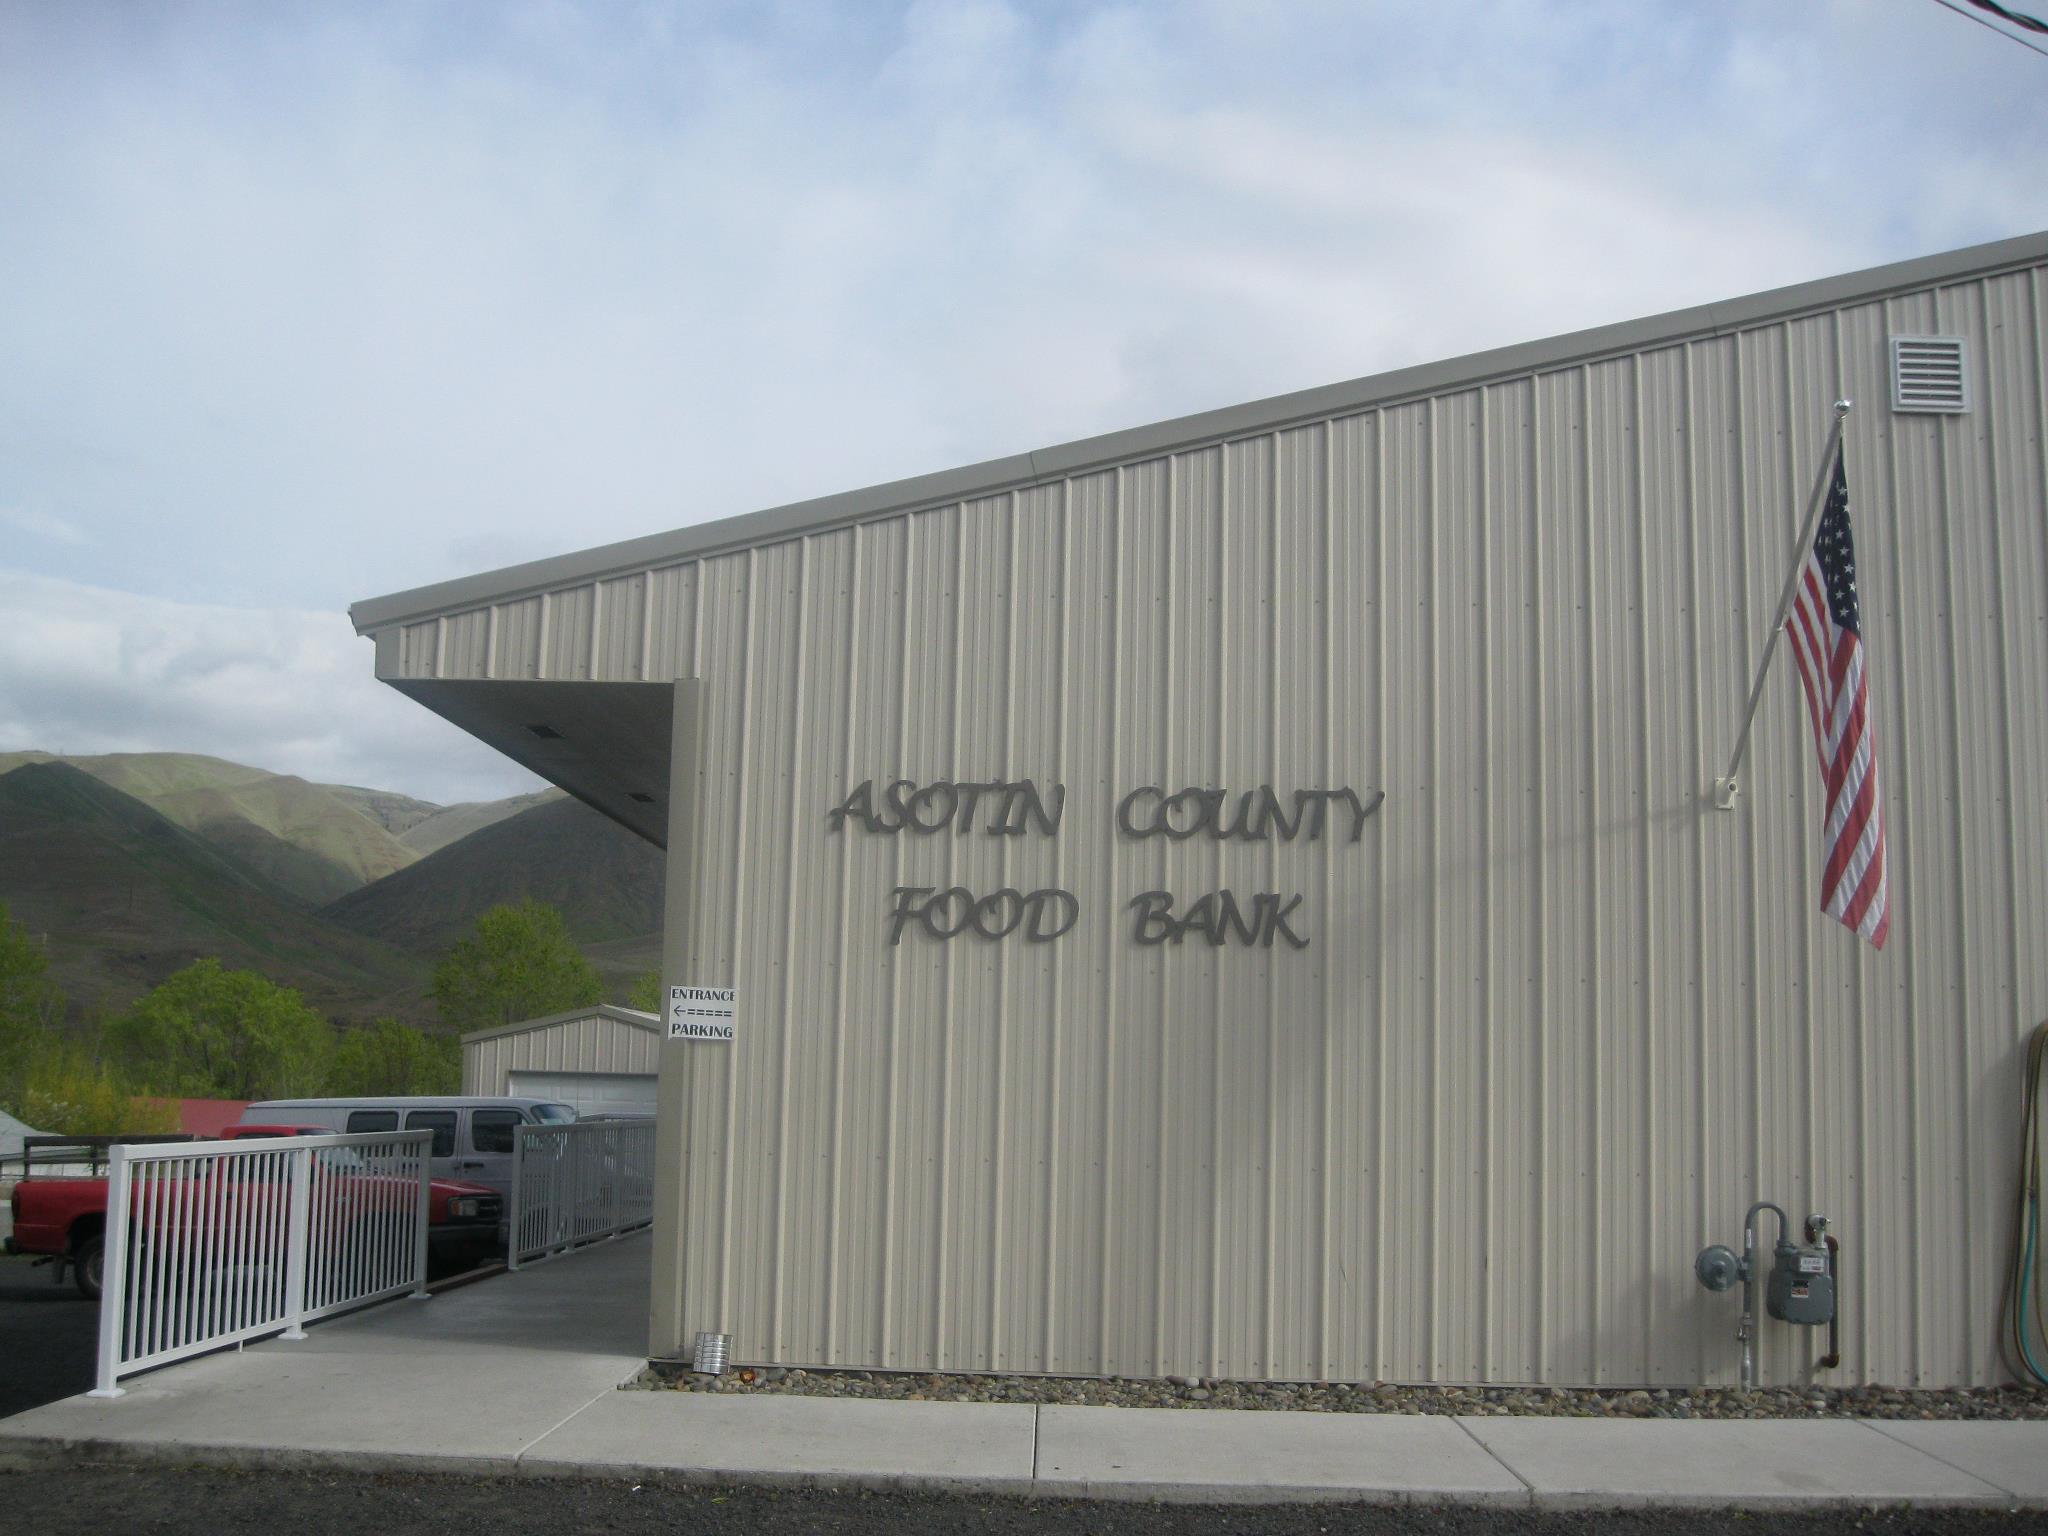 Asotin County Food Bank Association